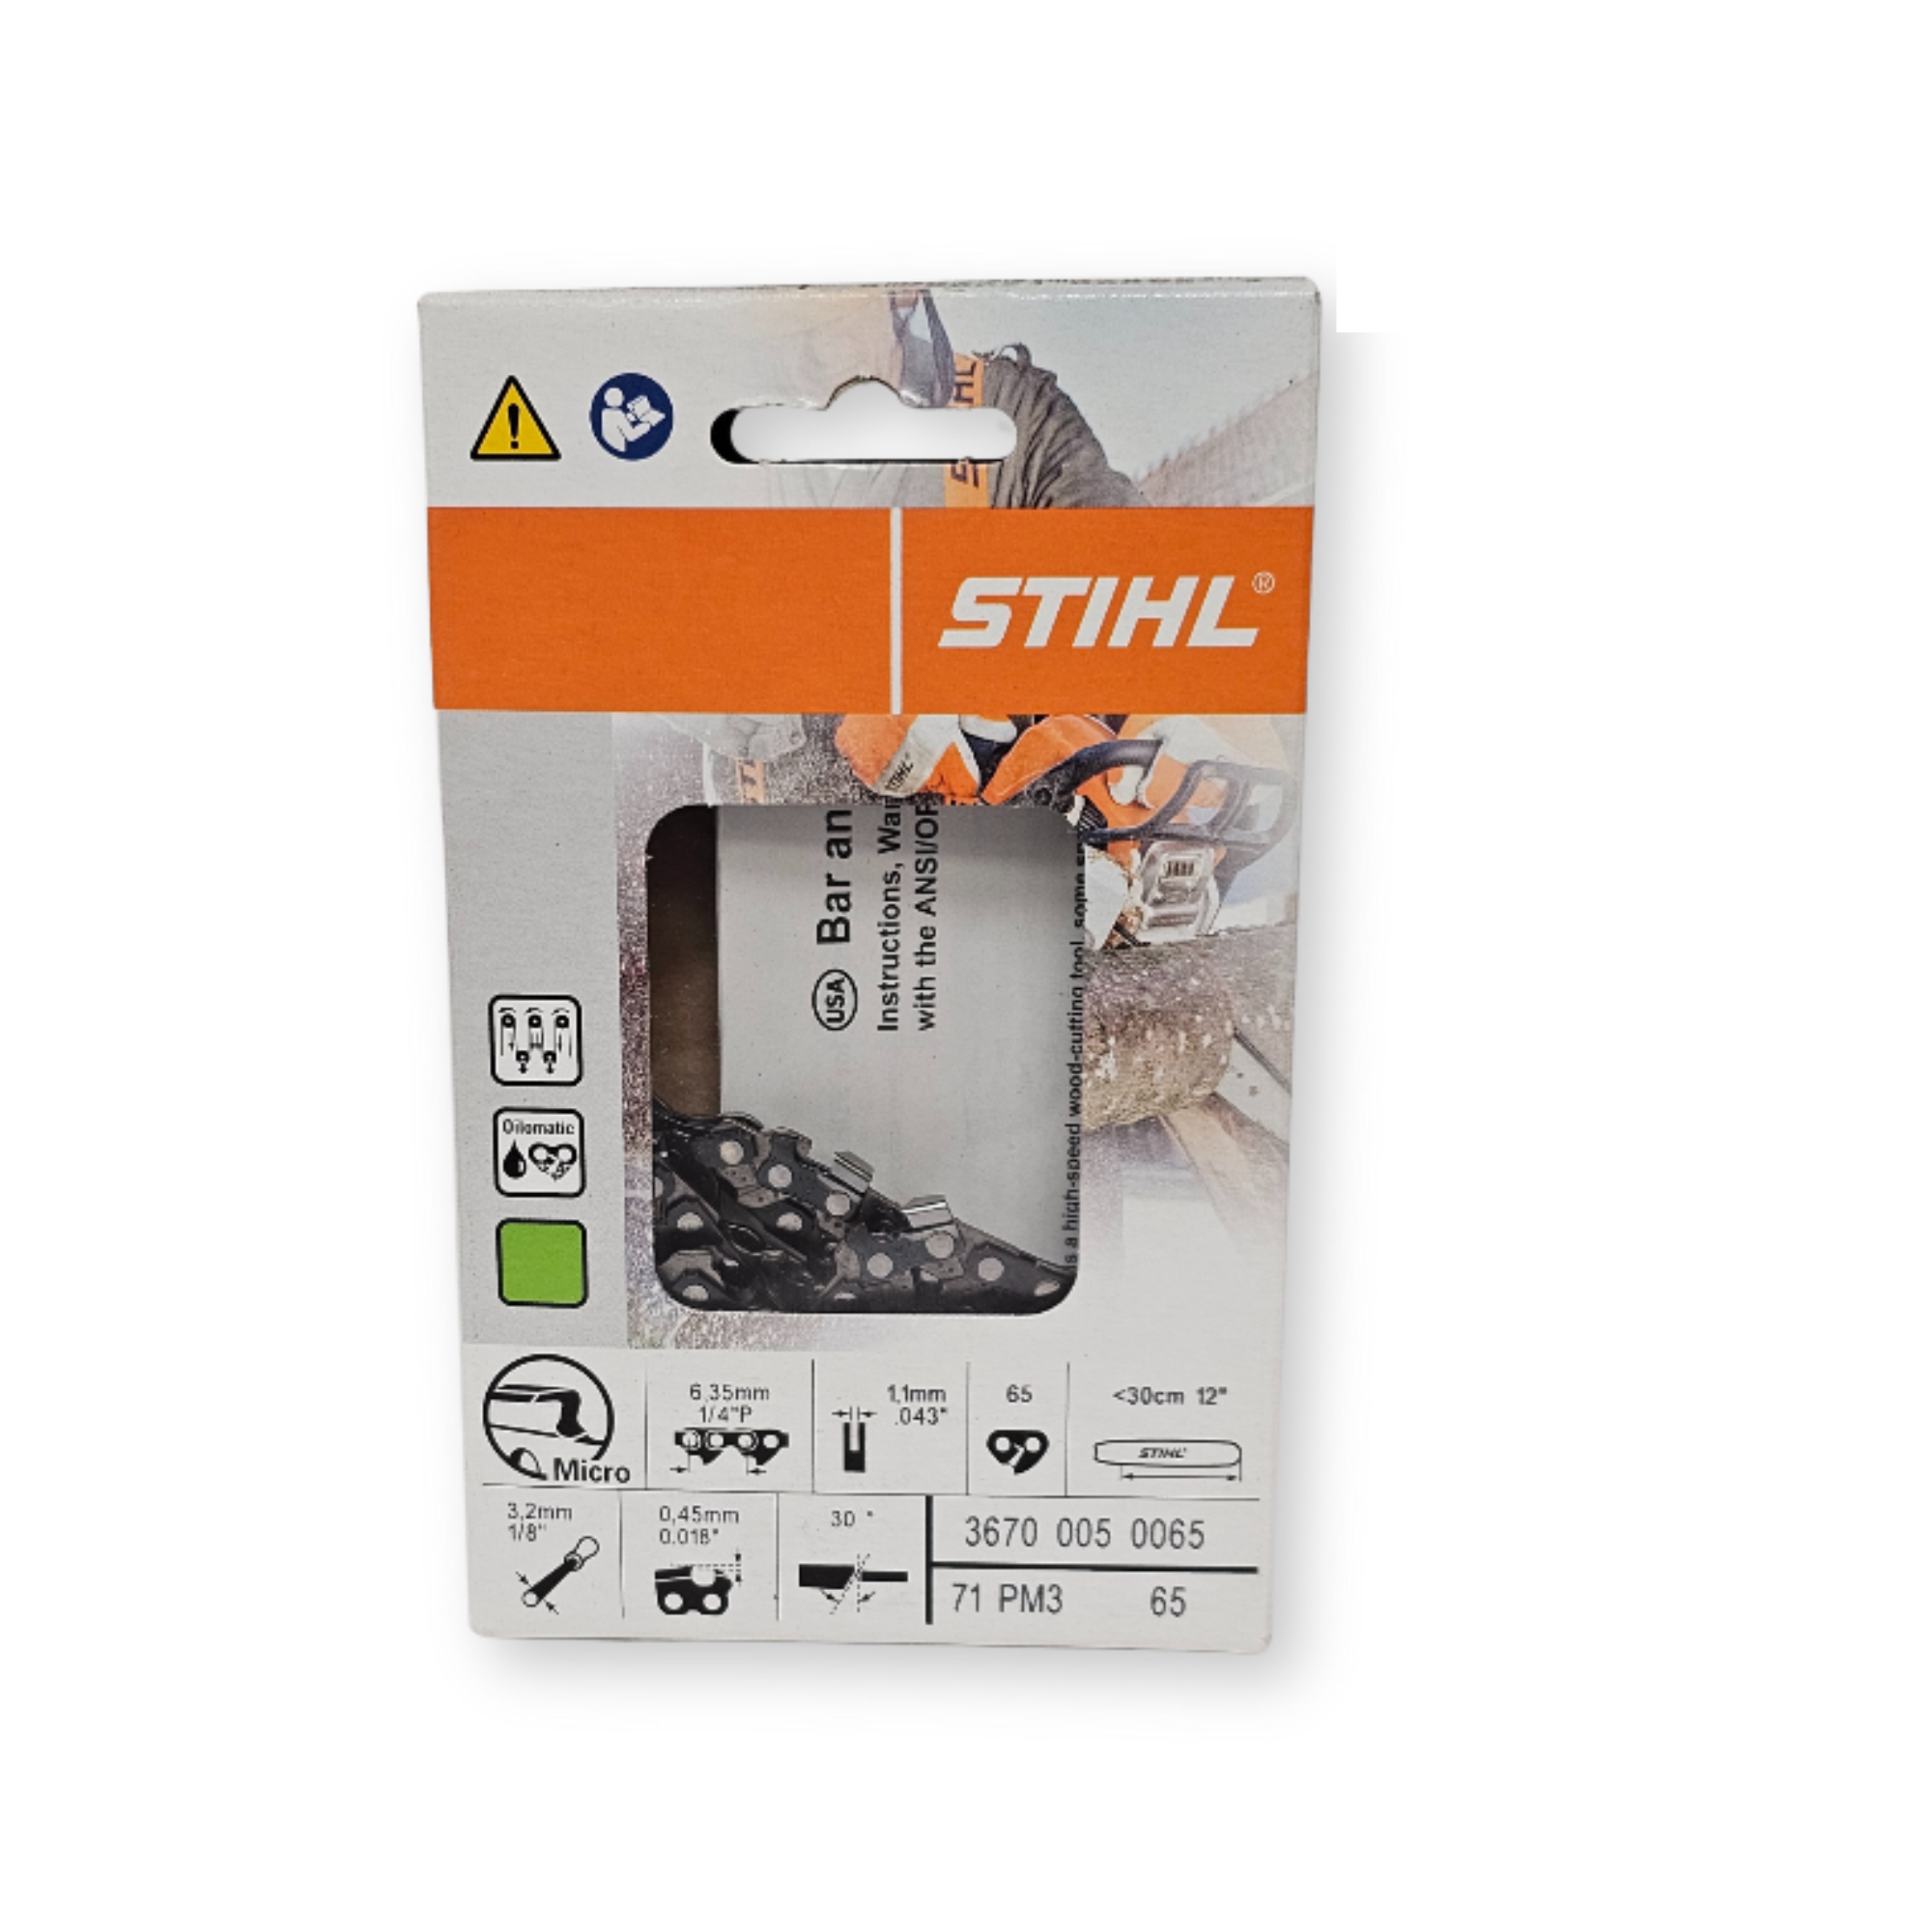 Stihl Oilomatic Picco Micro 3 | 71 PM3 65 | 12" | 65 Drive Links | Chainsaw Chain | 3670 005 0065